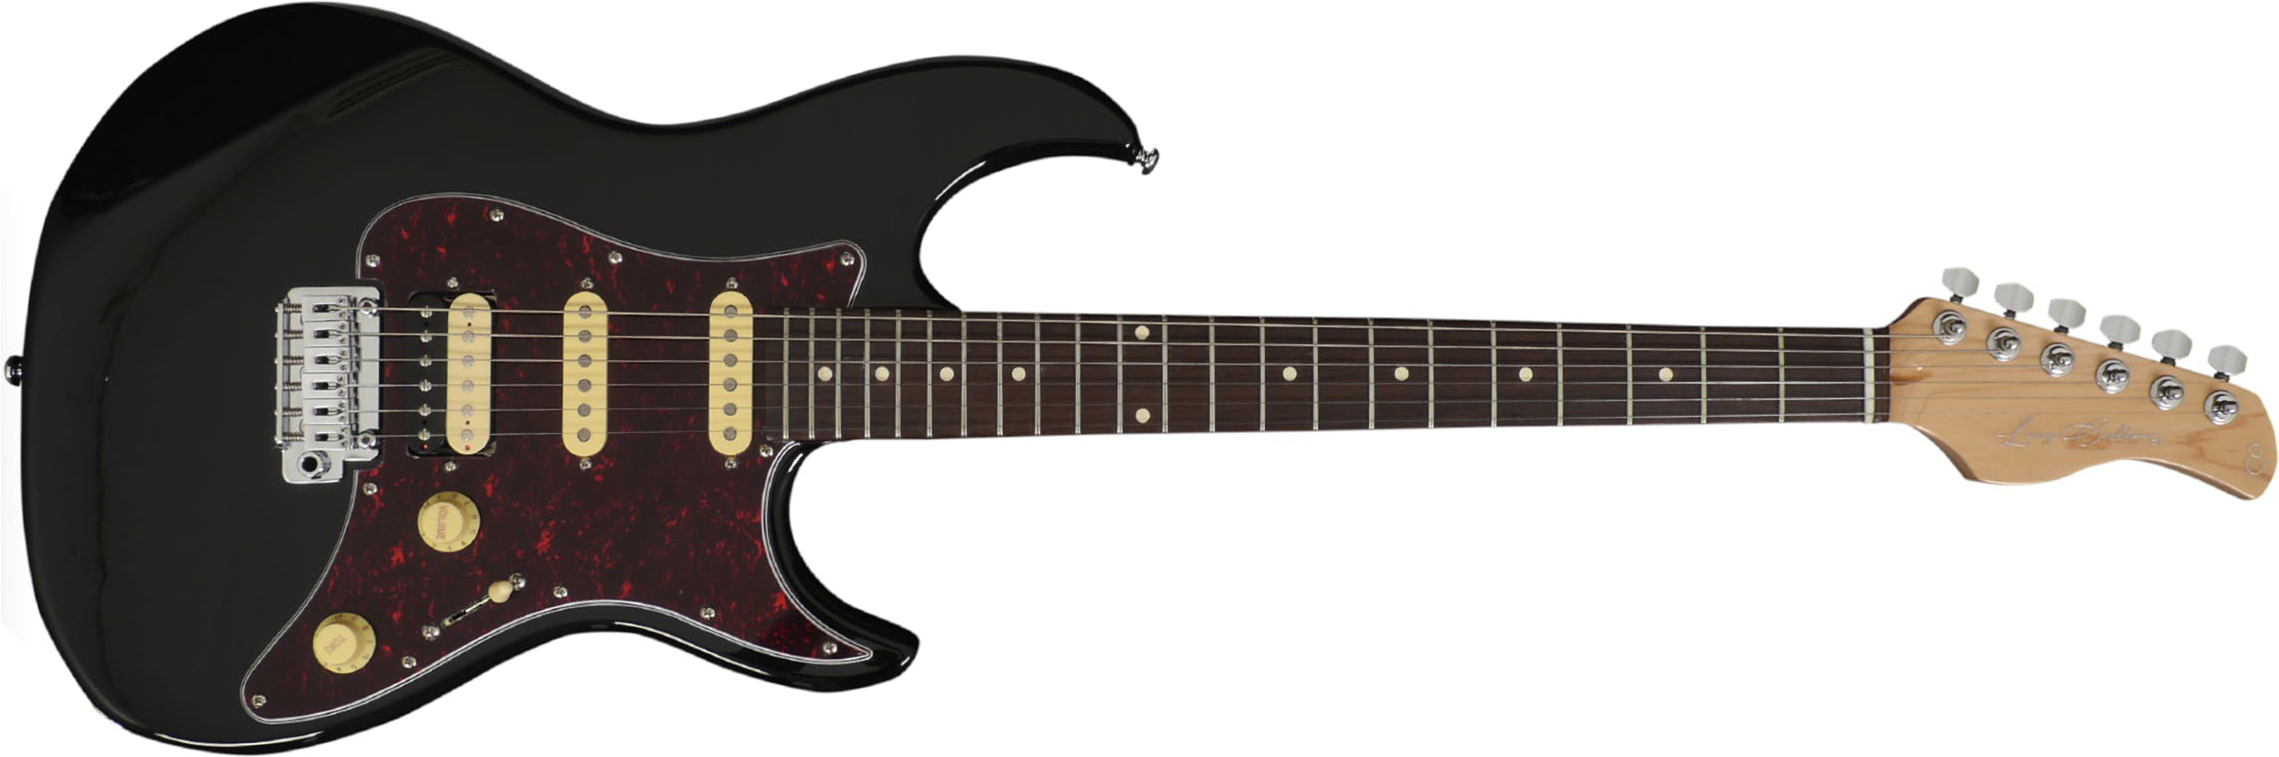 Sire Larry Carlton S3 Signature Hss Trem Rw - Black - Guitare Électrique Forme Str - Main picture